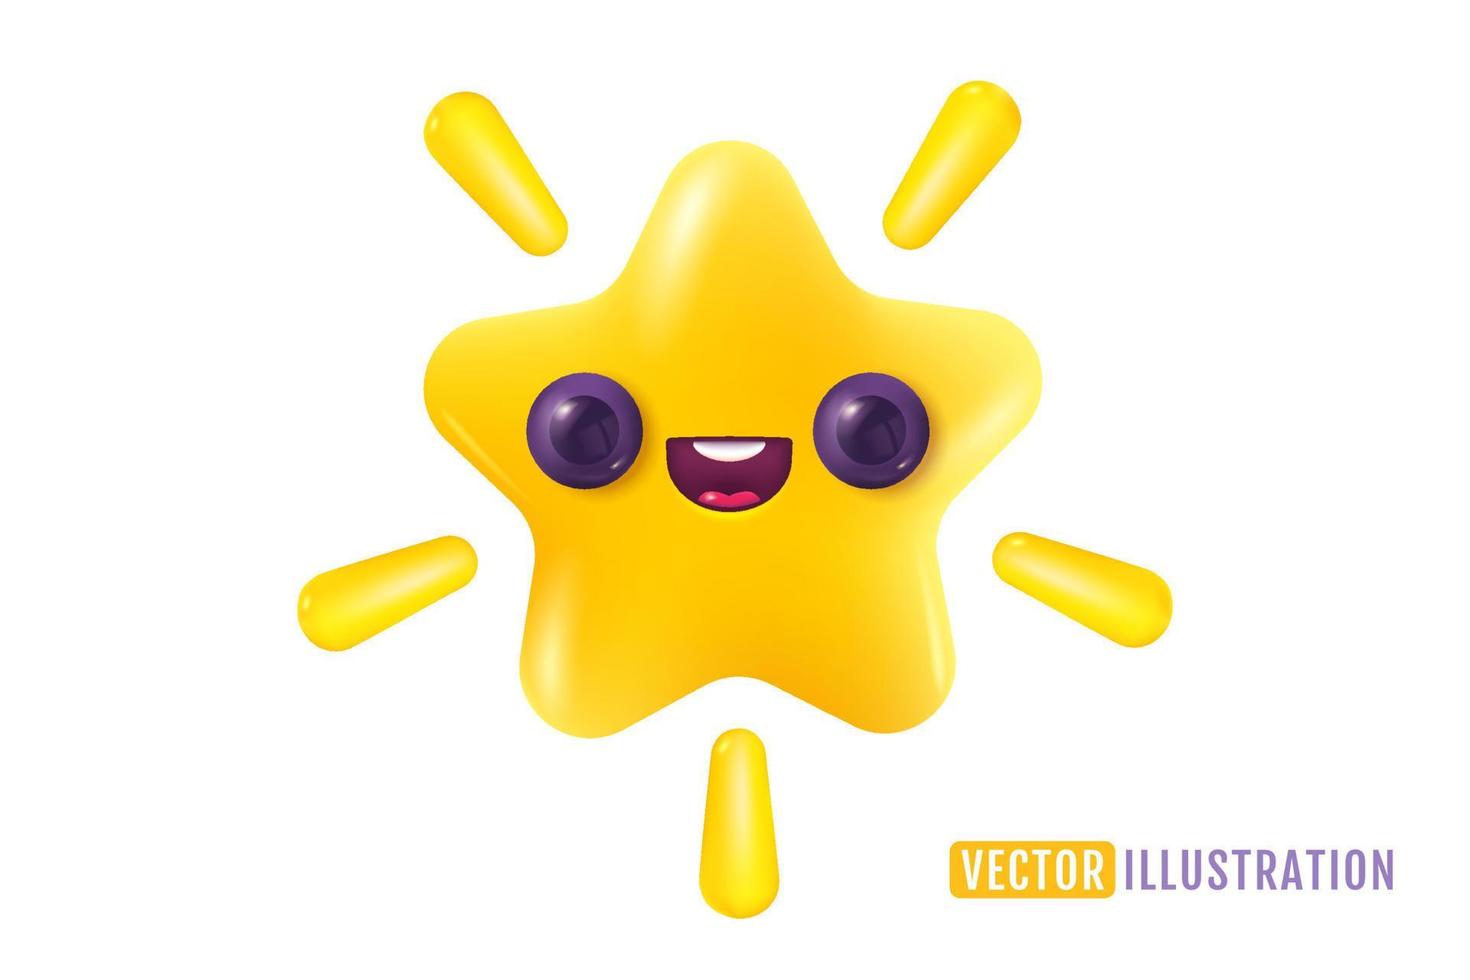 icono de vector de estrella amarilla en estilo 3d realista. logros para juegos o comentarios de calificación de clientes del sitio web. ilustración vectorial de estrella en estilo kawaii.